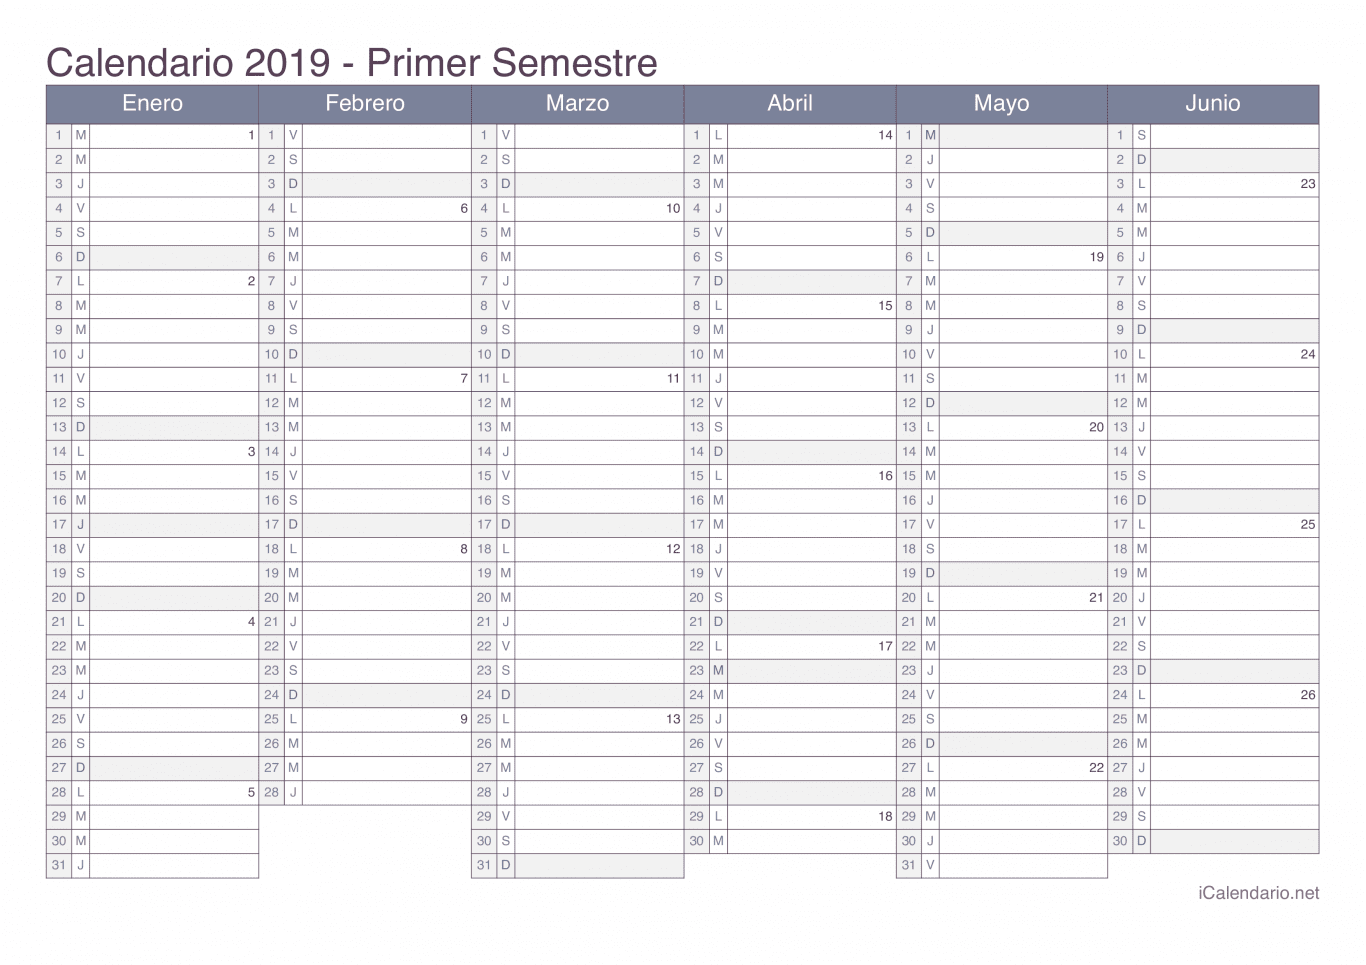 Calendario por semestre com números da semana 2019 - Office